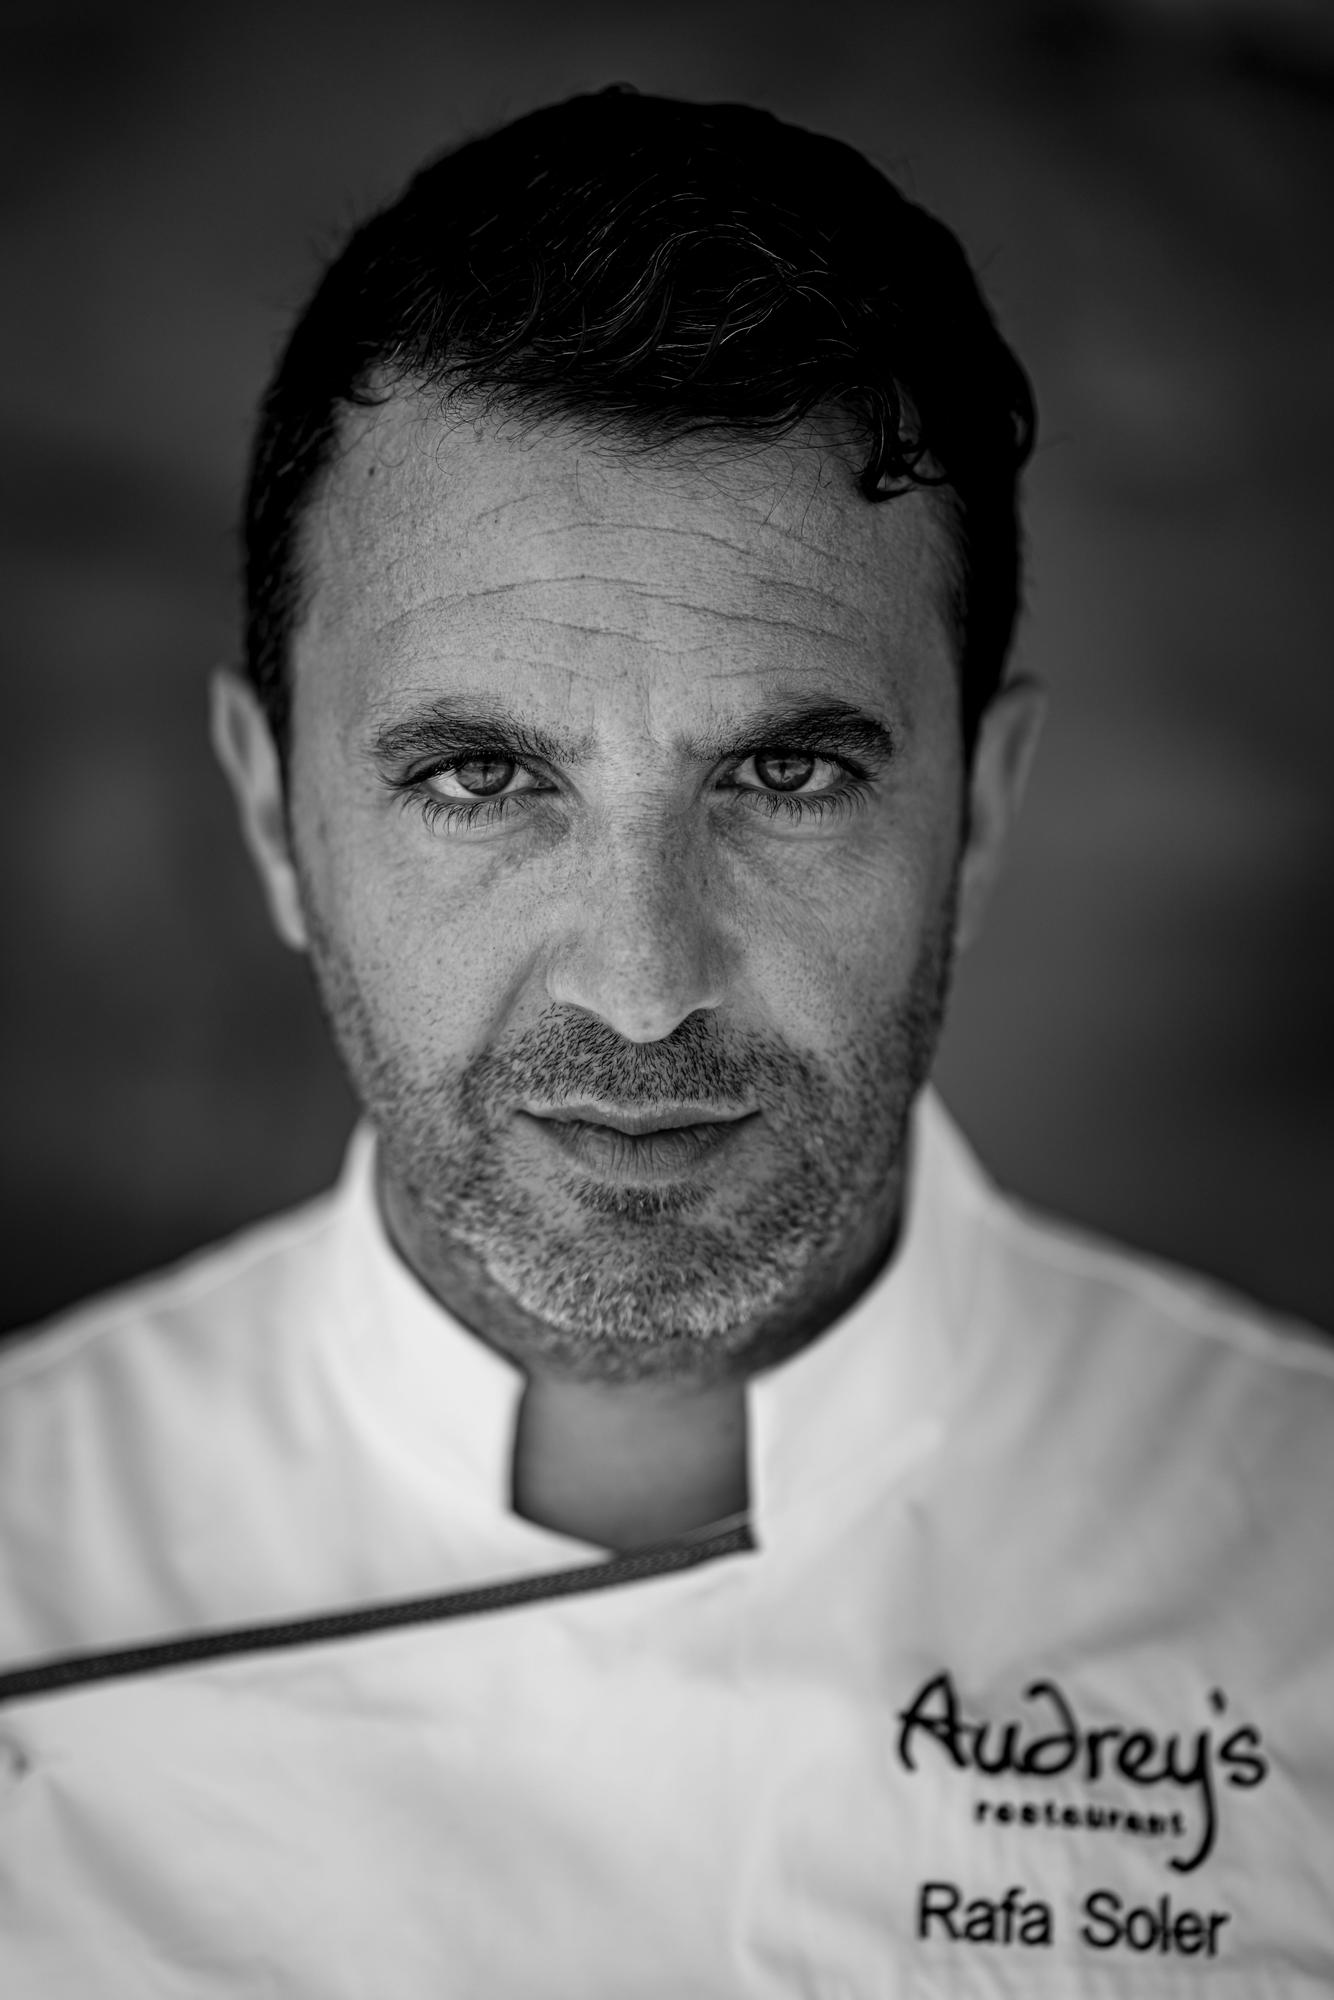 Rafa Soler participará como chef invitado.